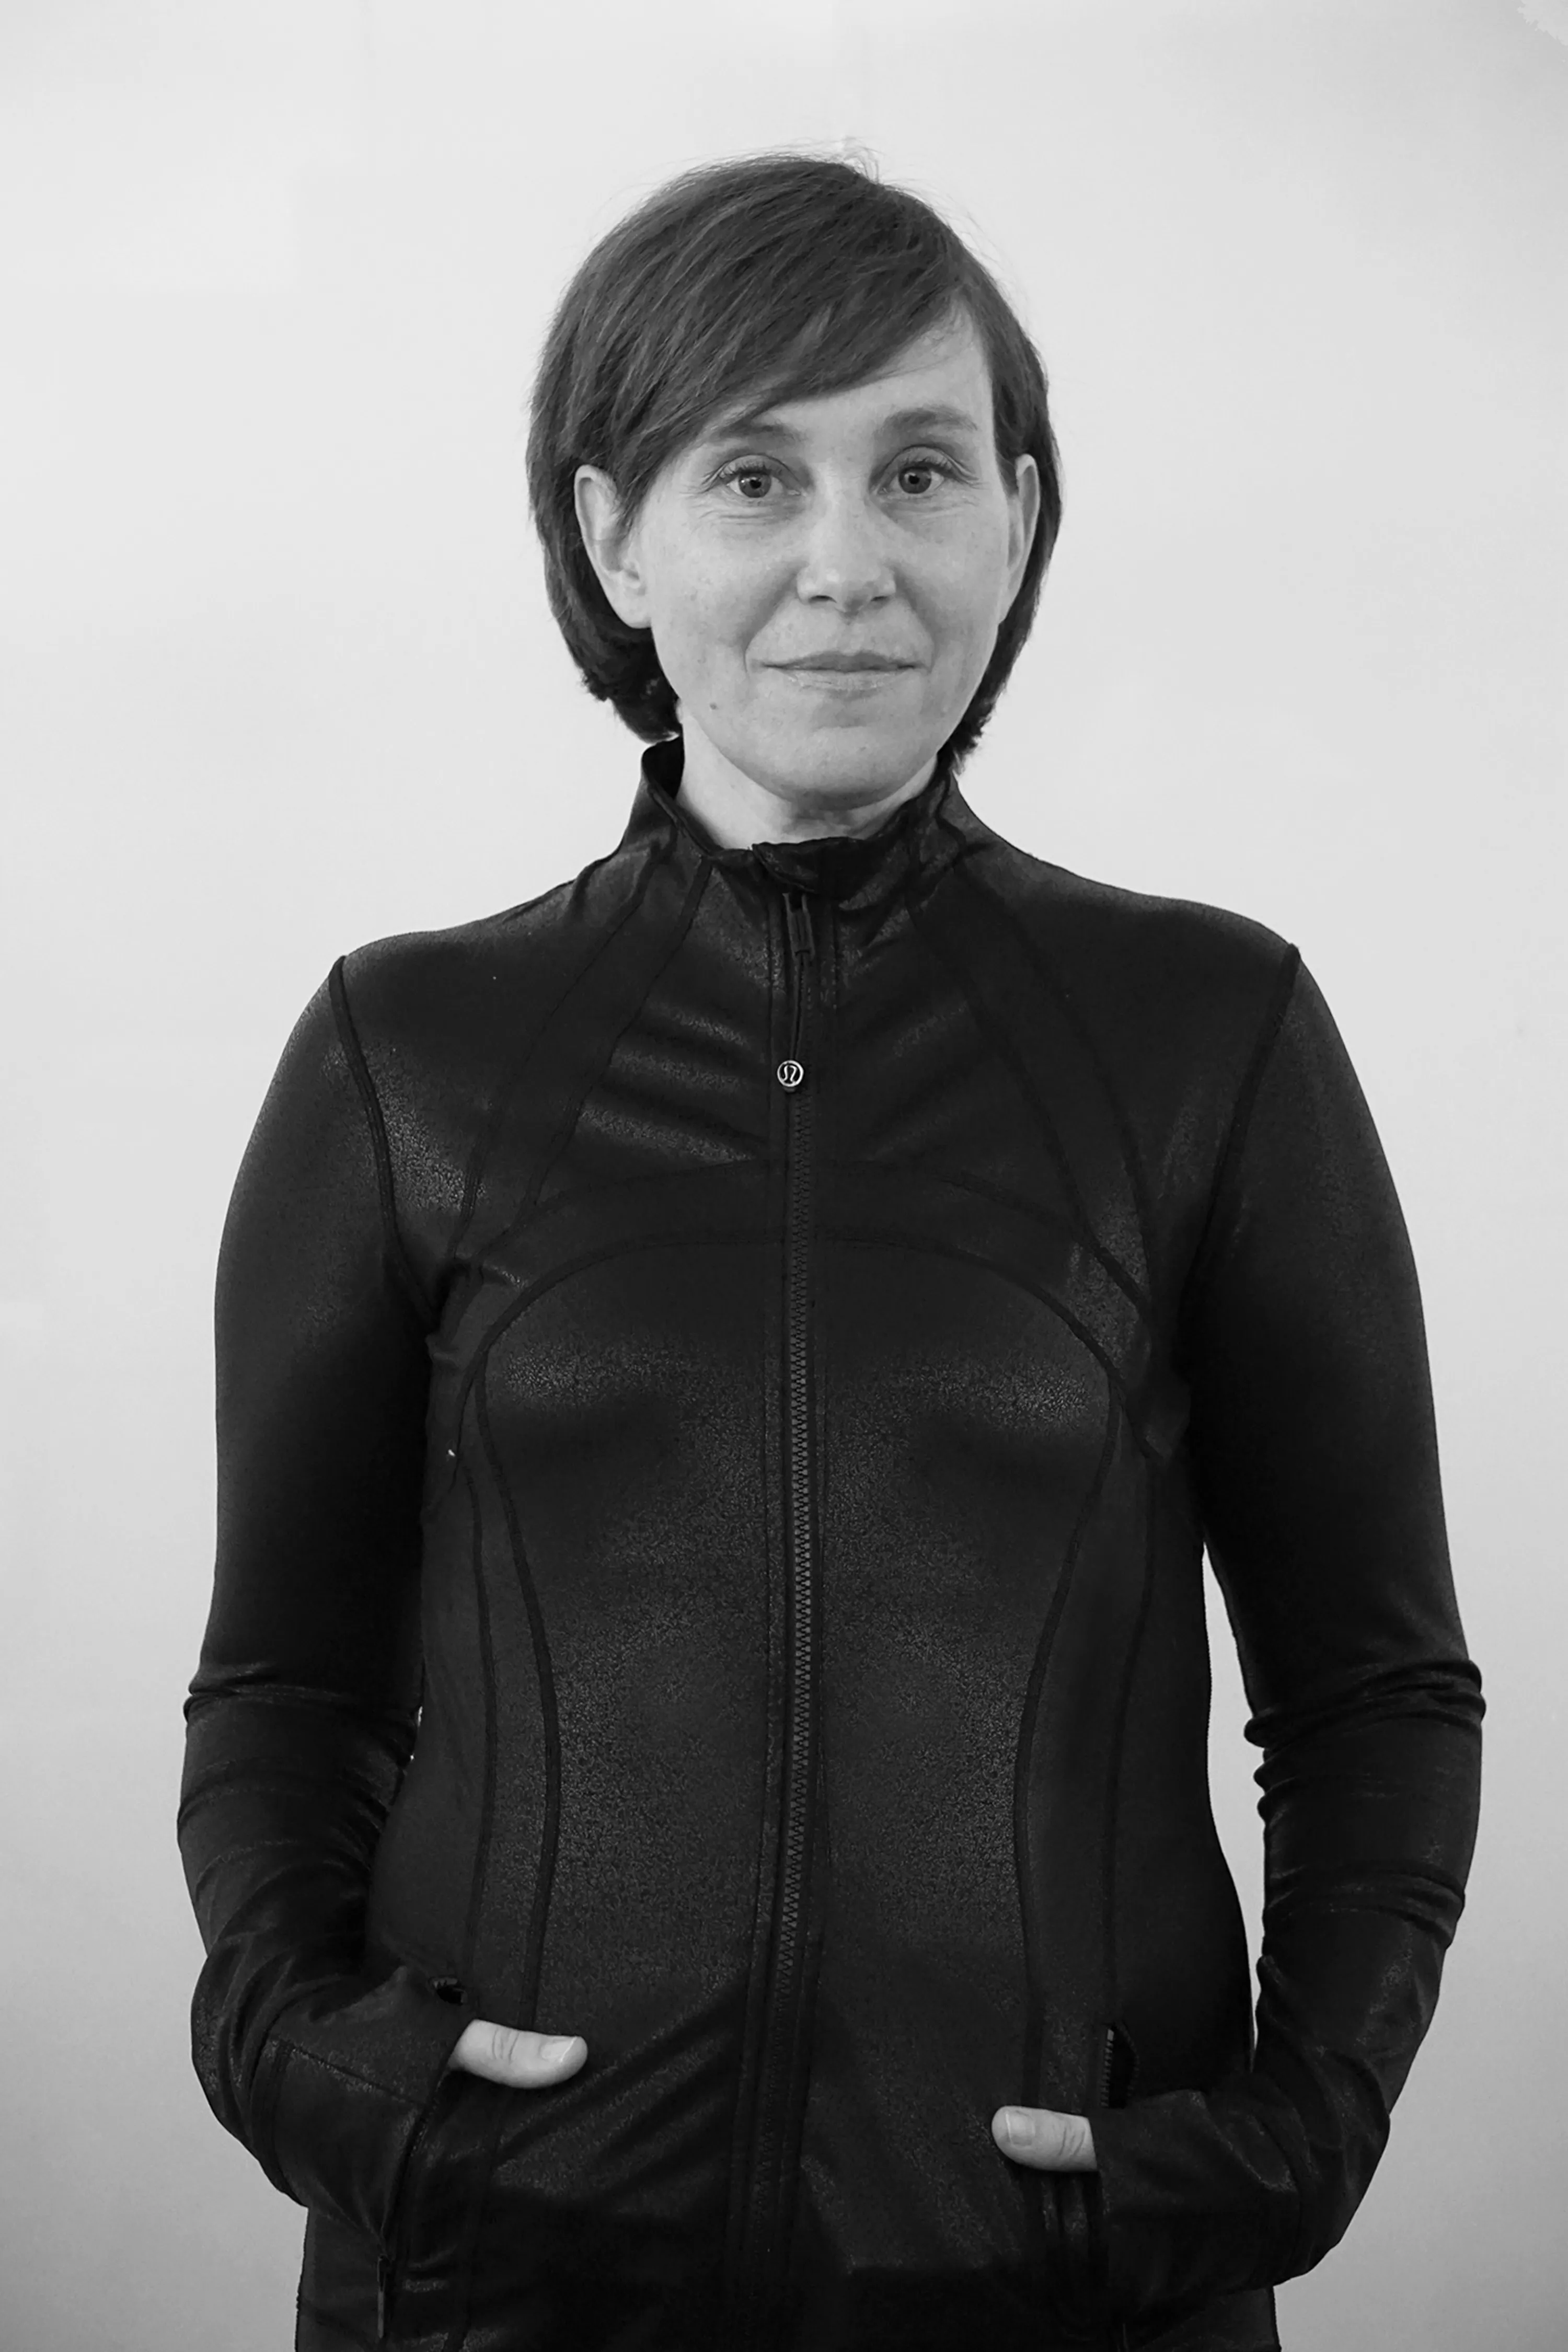 Sara Lundgren